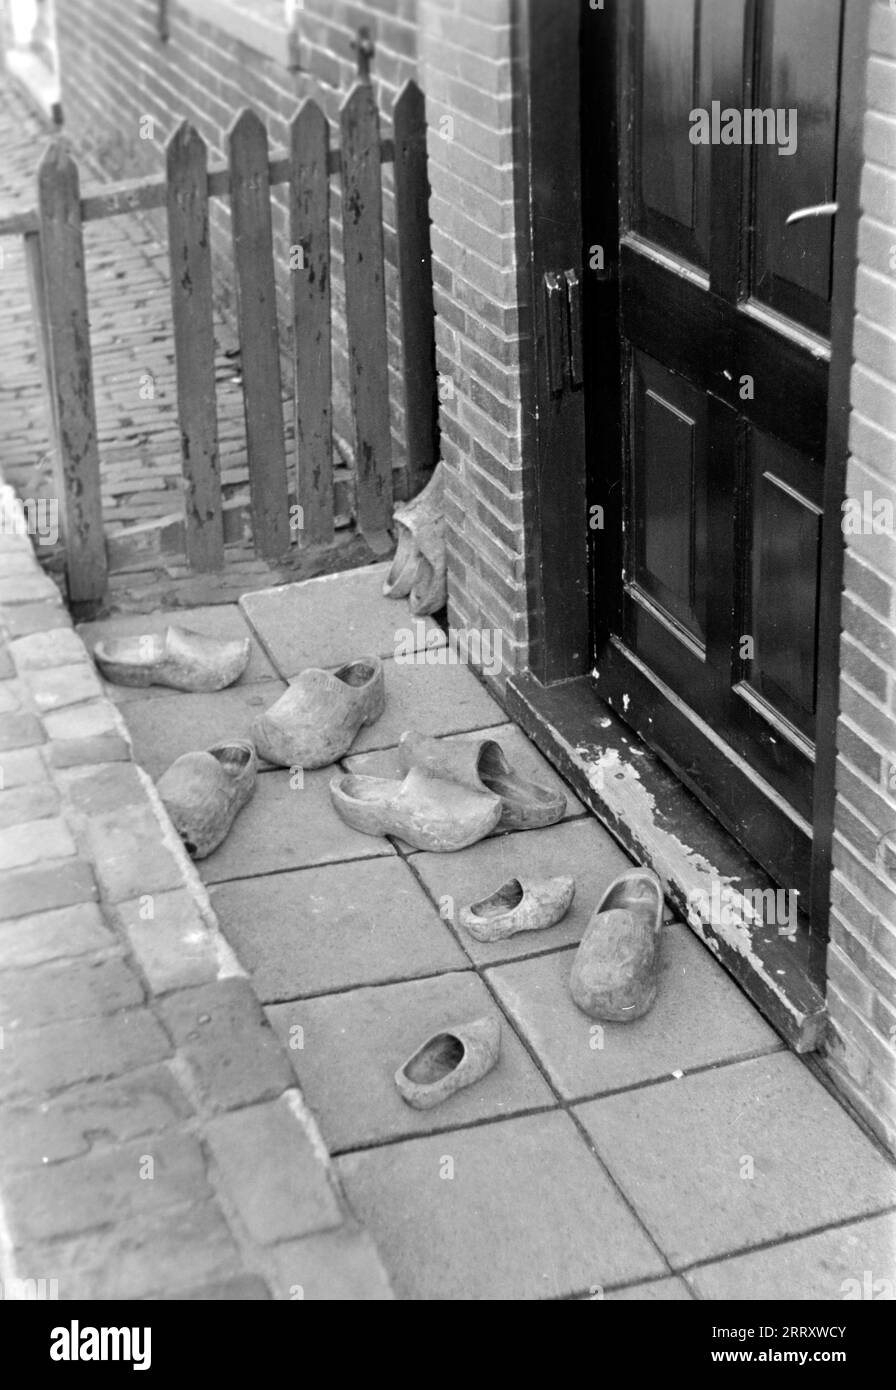 Niederländische Holzpantoffeln, genannt Klompen, liegt in einer Rinne vor der Haustür, Volendam 1941. Niederländische Hausschuhe aus Holz, genannt Klompen, liegen in einer Dachrinne vor der Eingangstür, Volendam 1941. Stockfoto